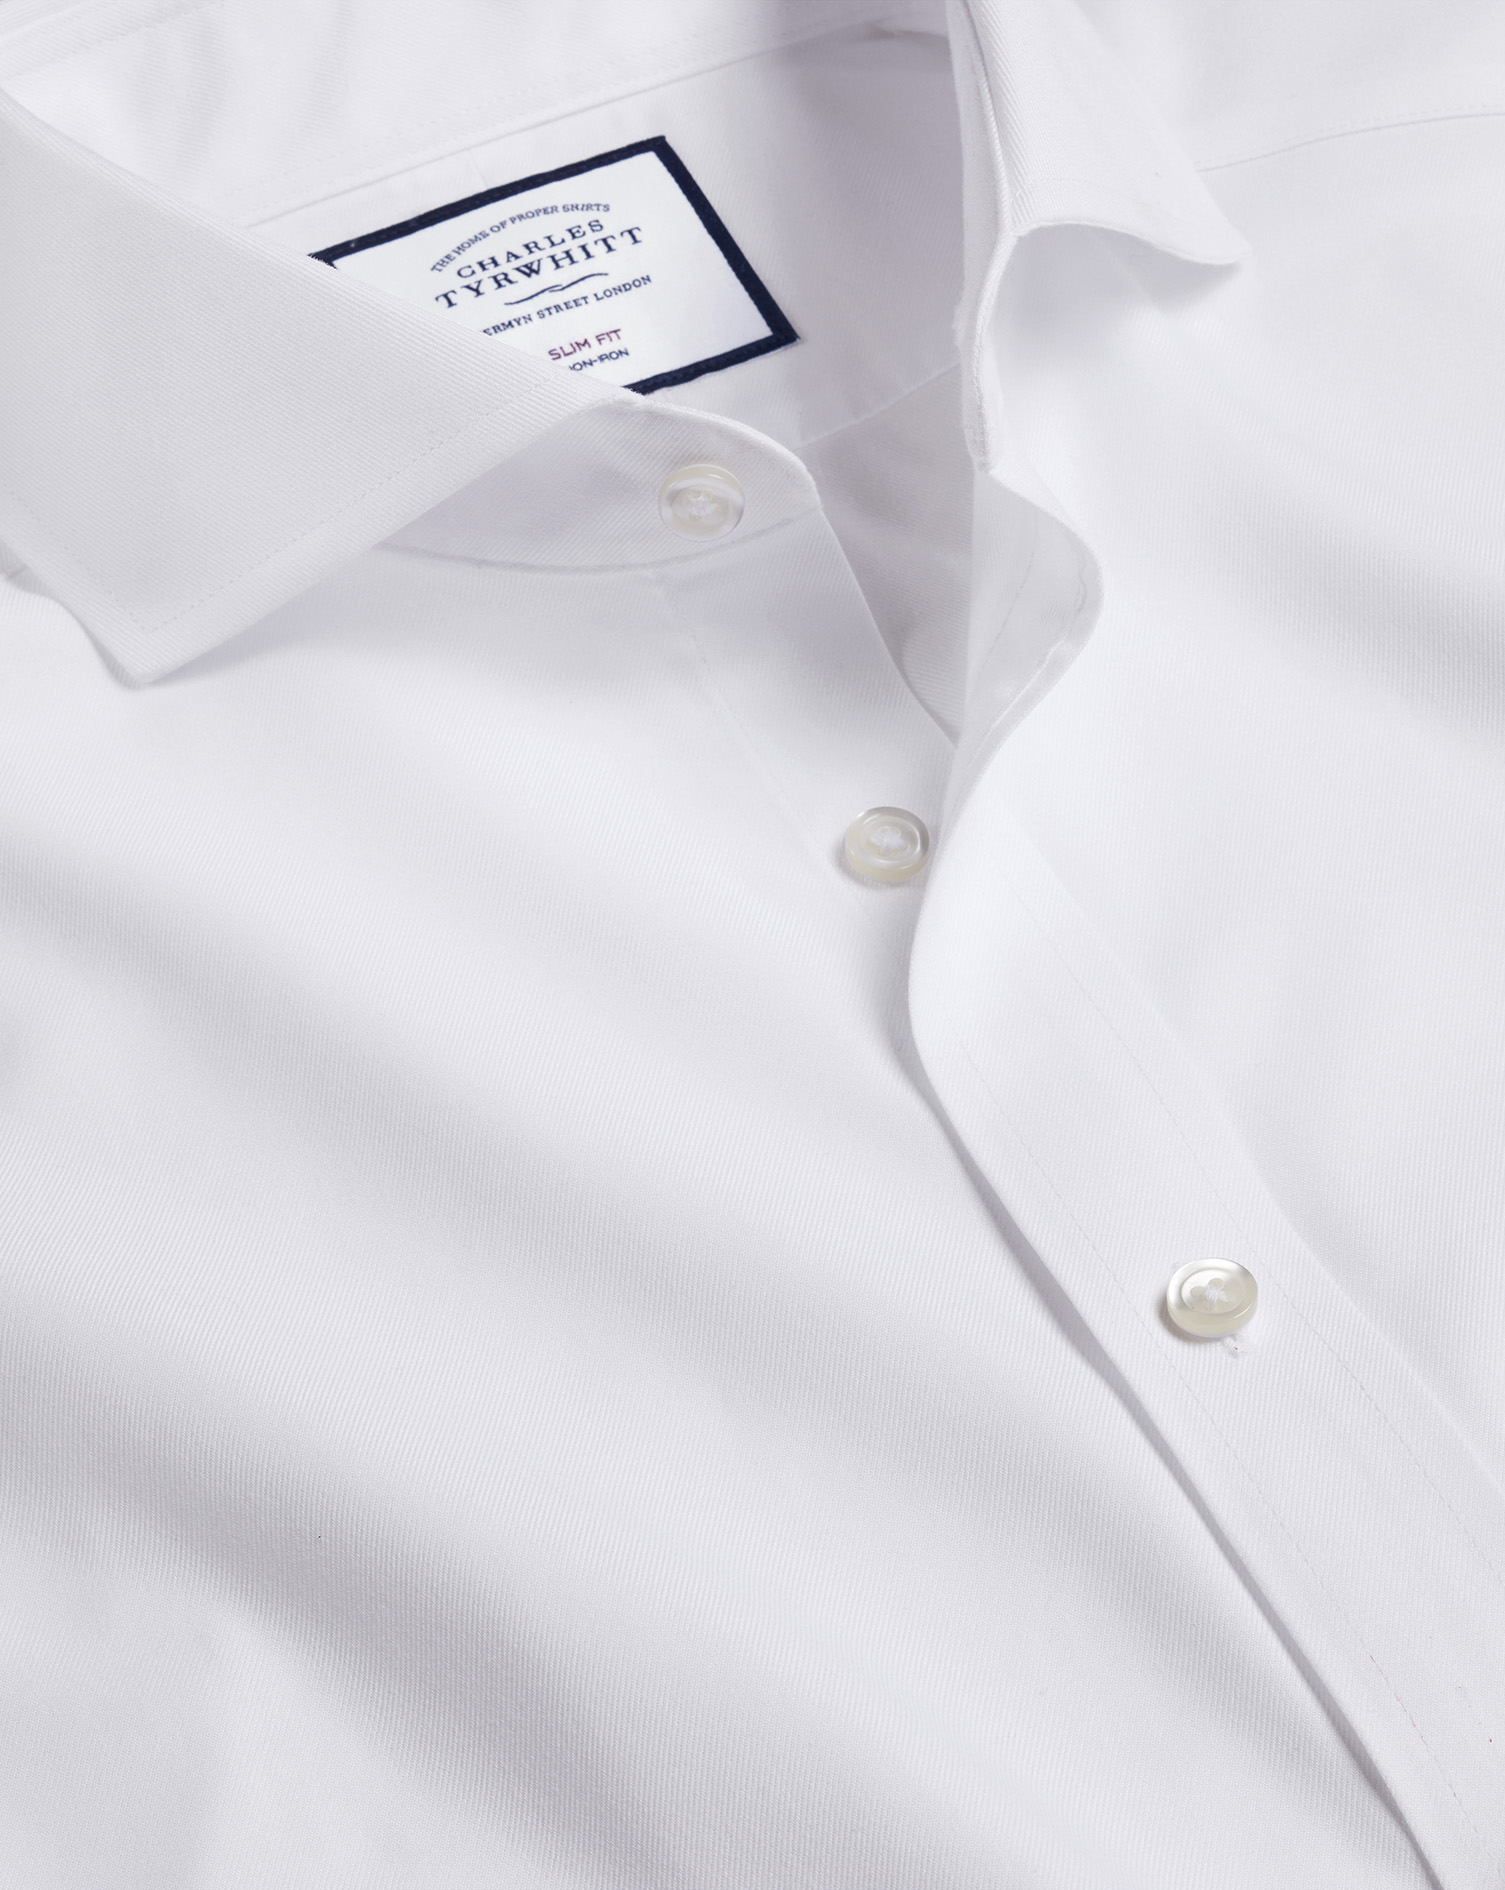 Charles Tyrwhitt Men’s Charles Tyrwhitt Shirt  16 collar 